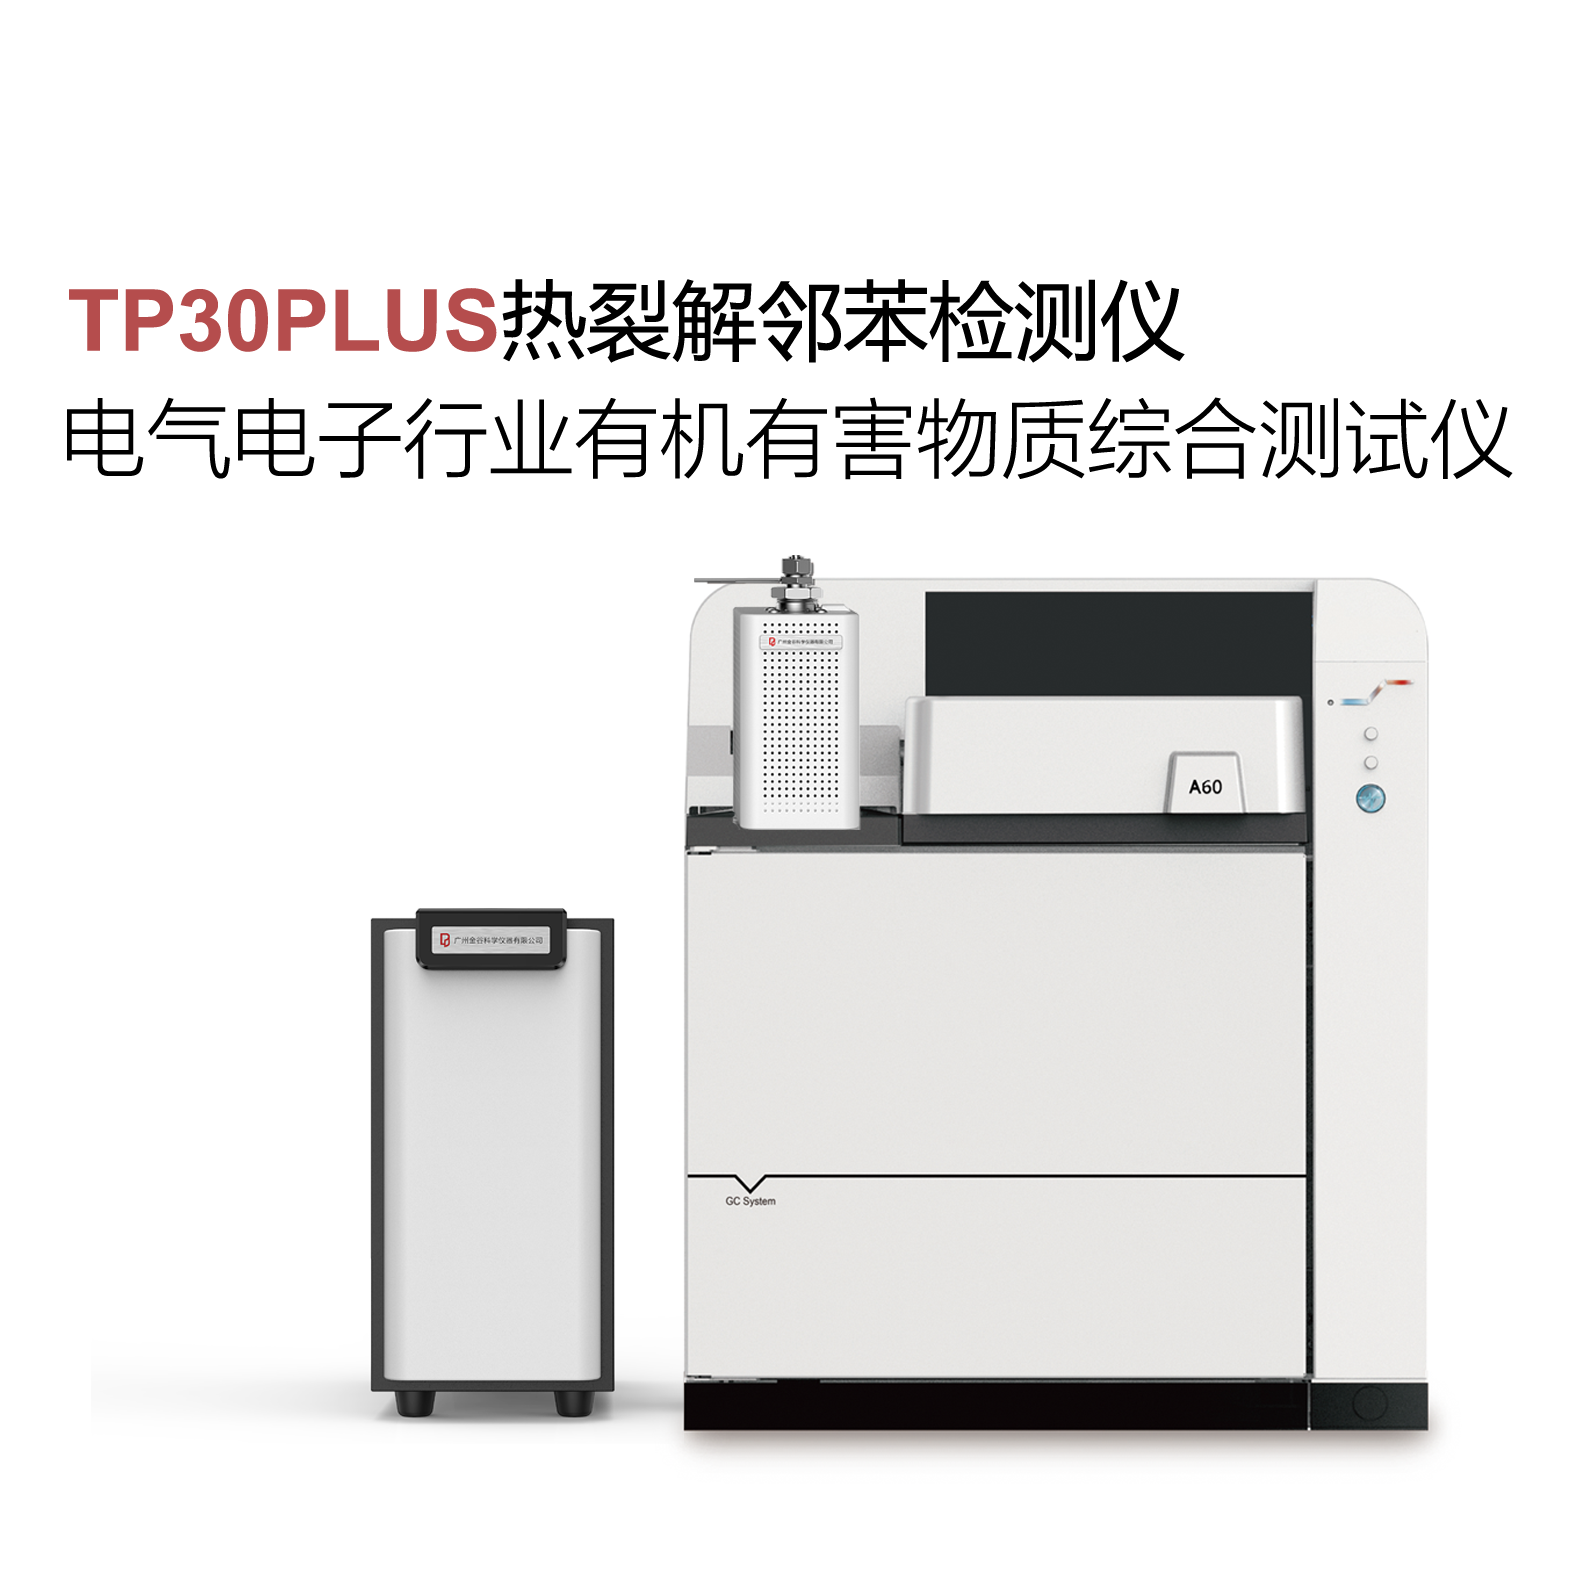 广州金谷科仪TP30PLUS热裂解邻苯检测仪器 RoHS2.0检测设备